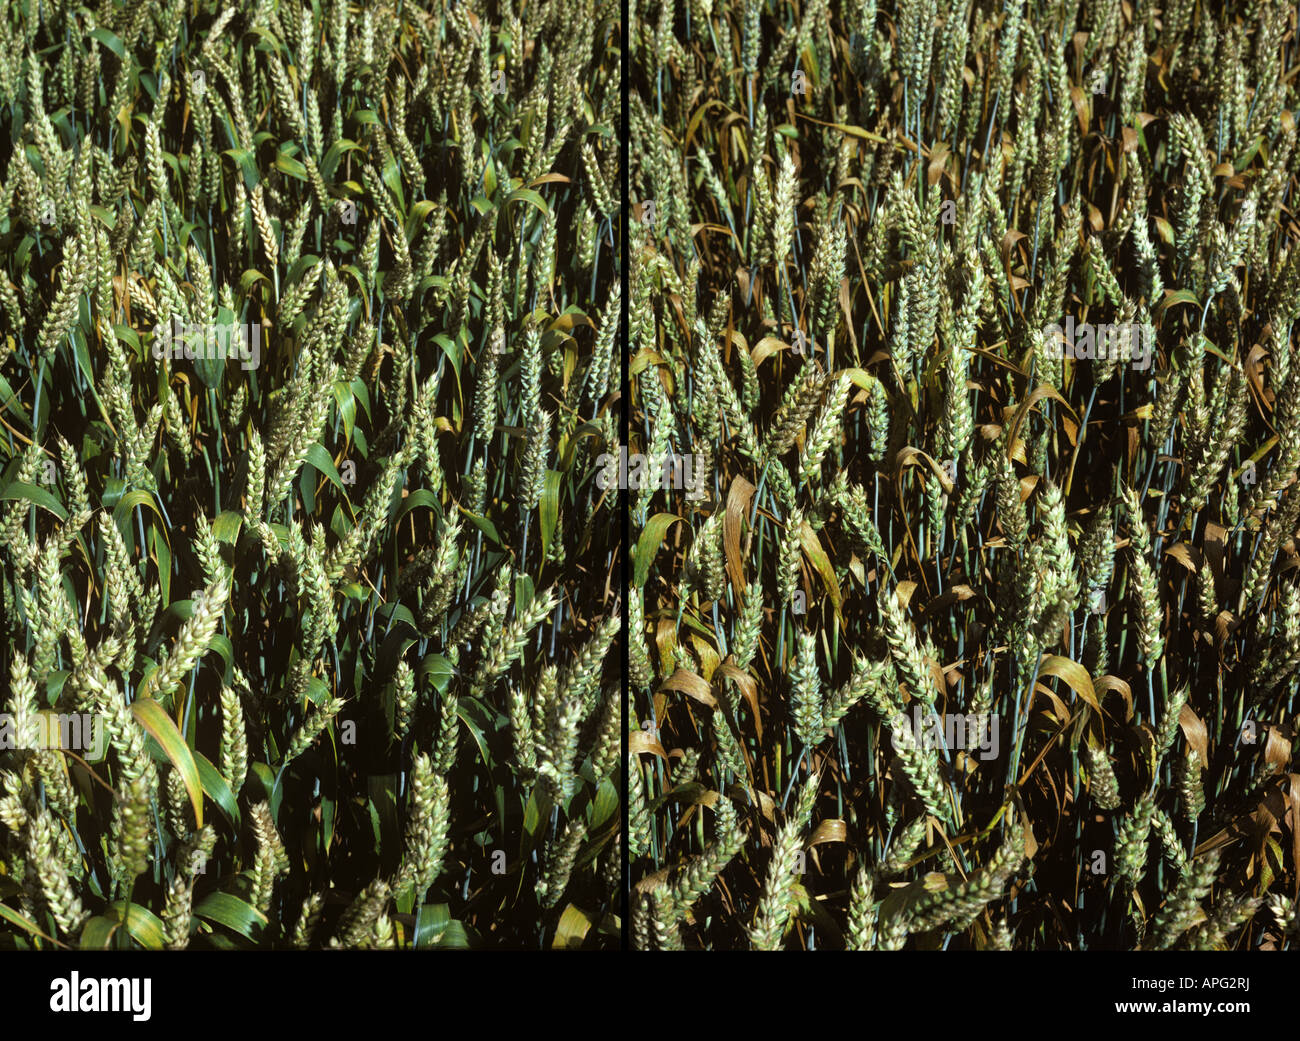 Weizen-Blatt oder brauner Rost Puccinia Triticina erkrankten Weizenernte in grünen Ohr im Vergleich zu gesunden Ernte Stockfoto